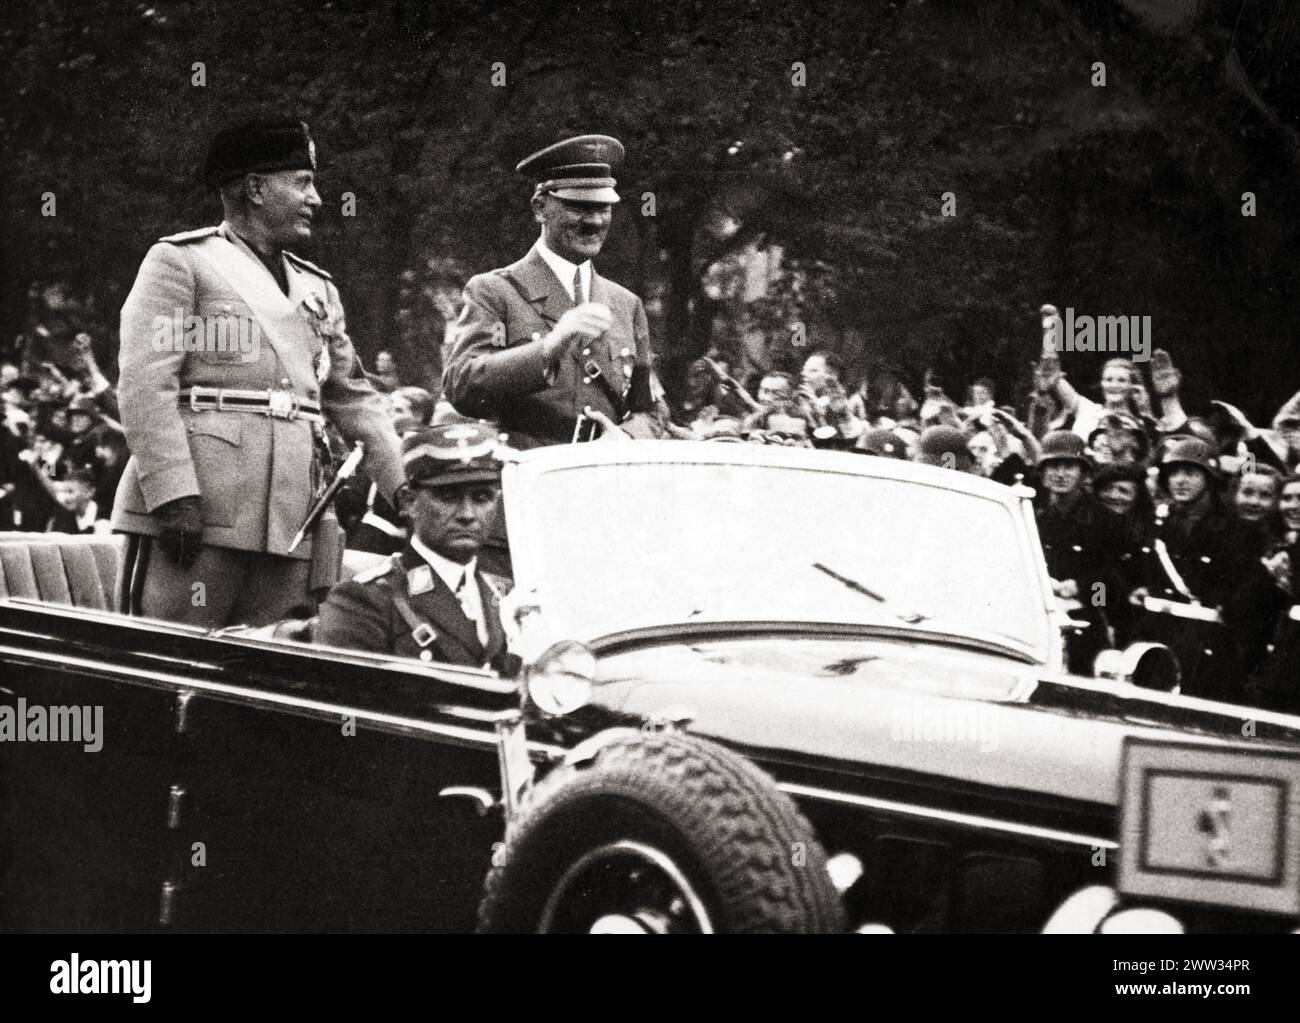 Benito Mussolini und Adolf Hitler in einem Auto, das von einer großen Menschenmenge unterstützt wurde - um 1940 Stockfoto